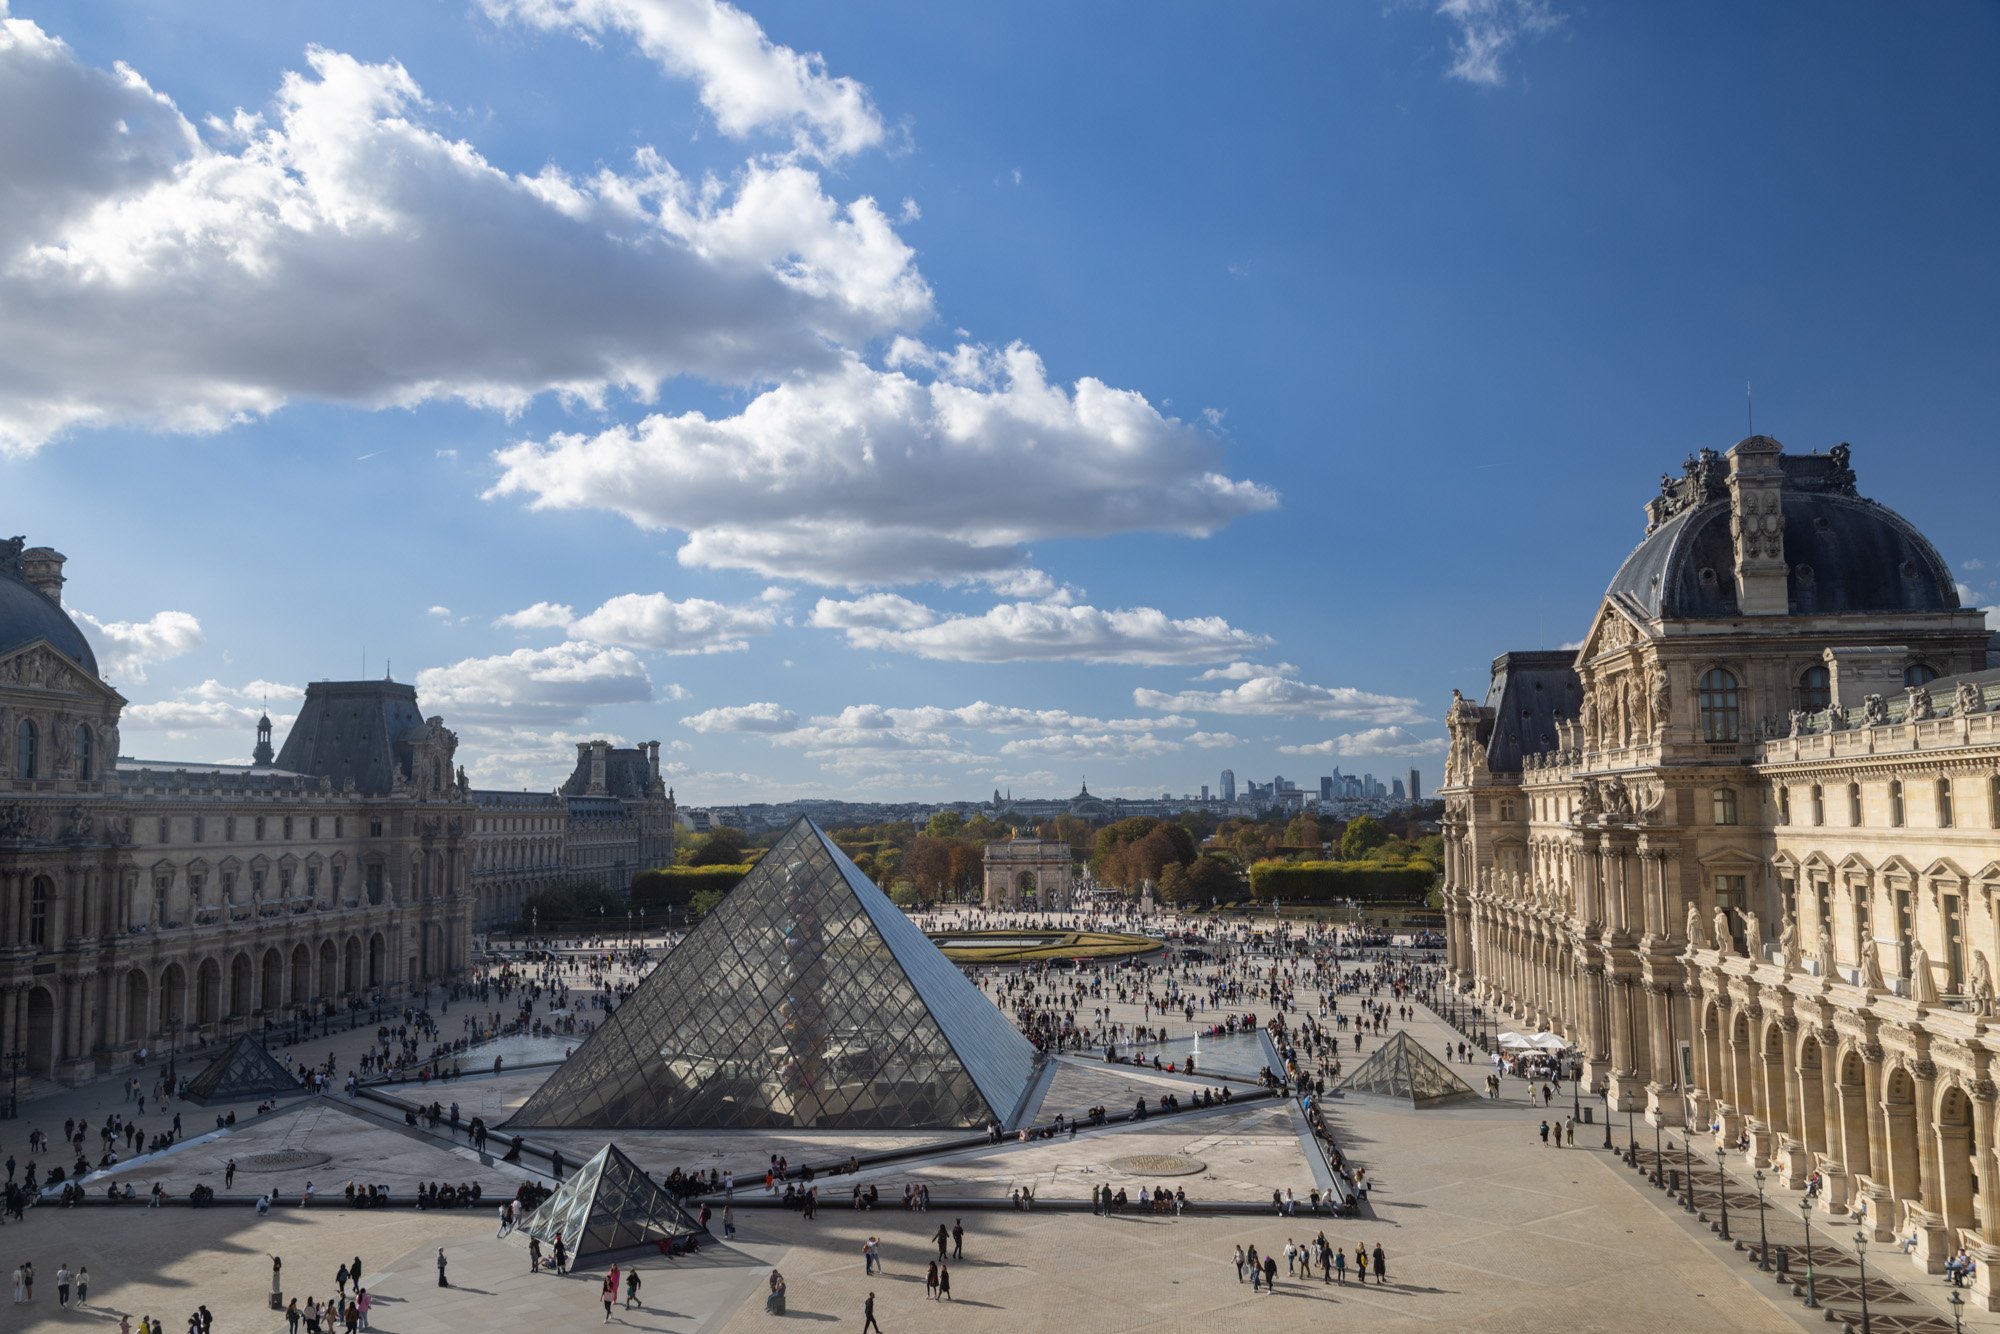  Louvre Museum Square, Paris, France 